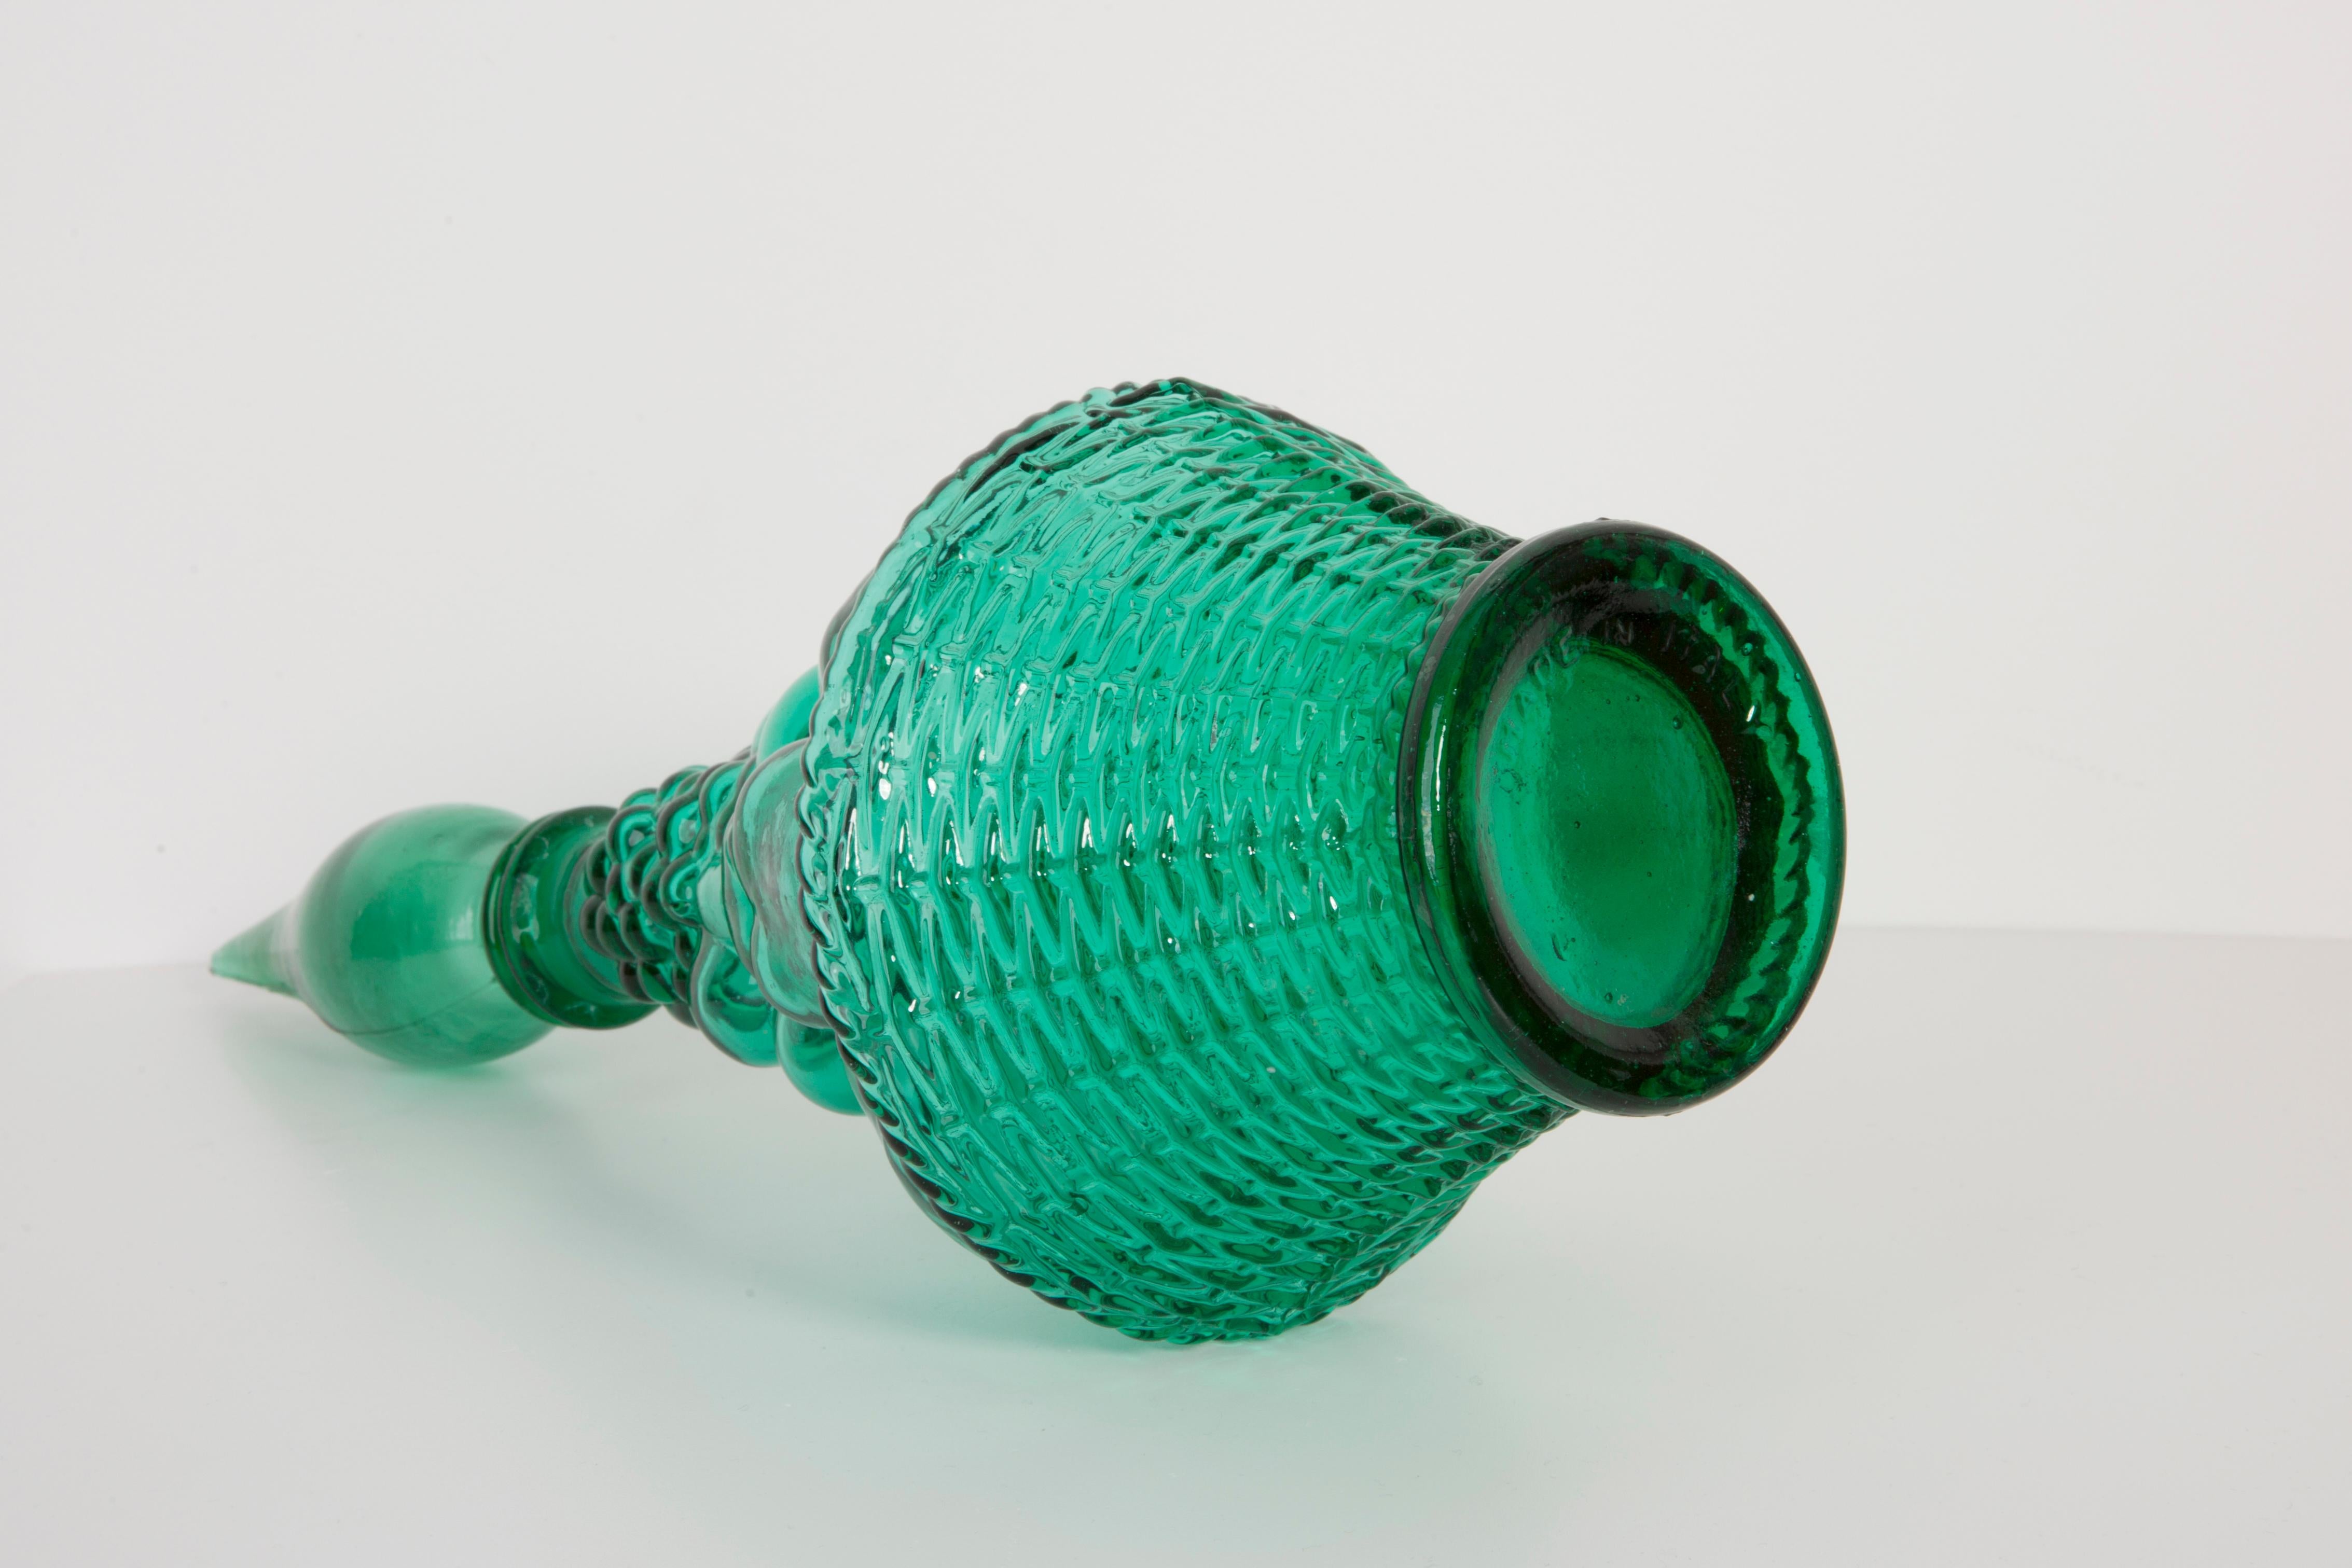 Eine atemberaubende grüne Glaskaraffe mit geometrischem Muster, hergestellt von einem der vielen Glashersteller aus der Region Empoli, Italien. Auf dem Sockel ist 